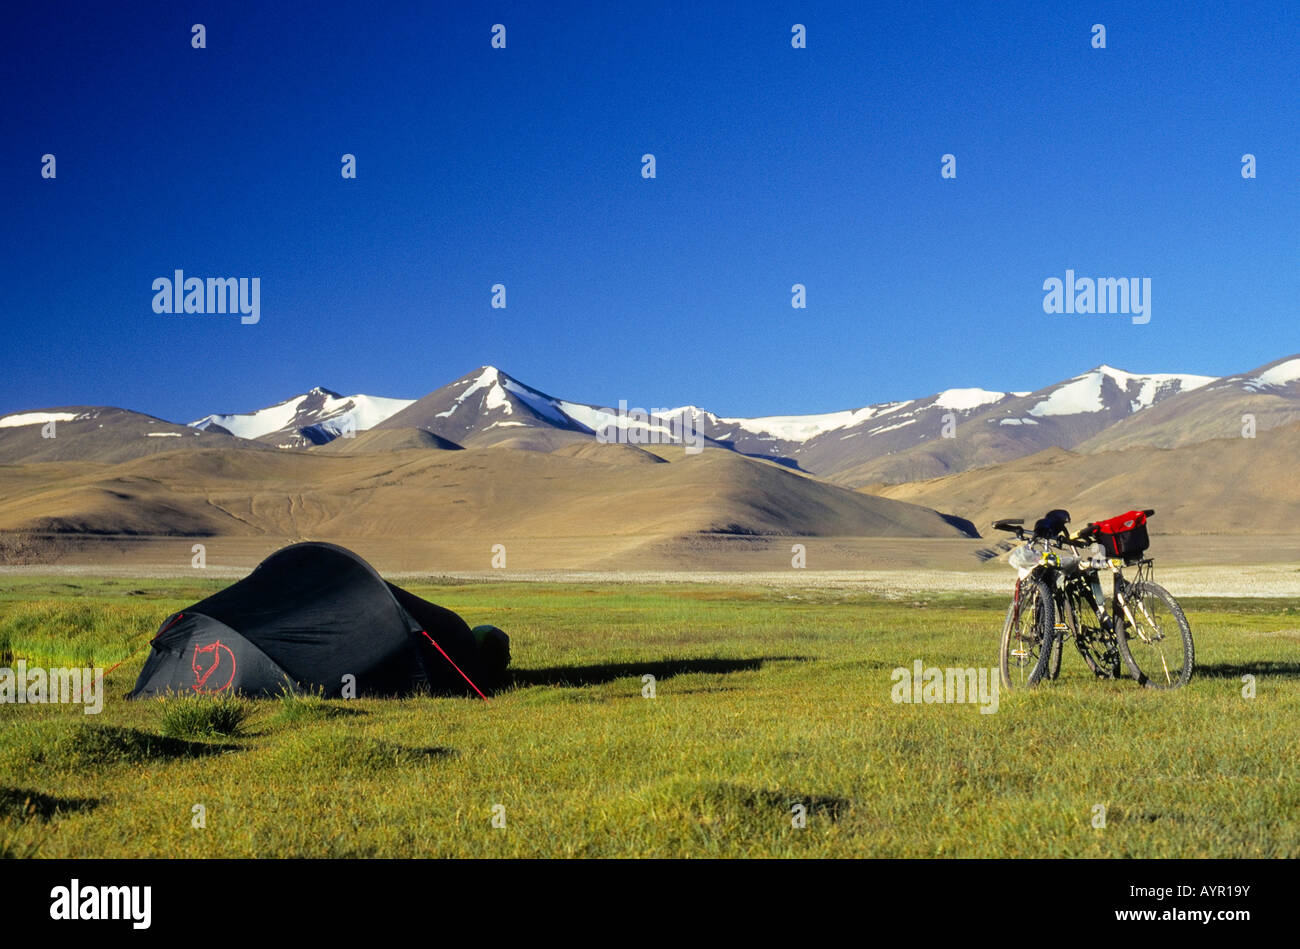 Deux vélos de montagne à côté d'une tente, d'herbe plateau verdoyant et de sommets enneigés, d'une altitude de plus de 4900 mètres, Himalaya, Ladakh, Banque D'Images